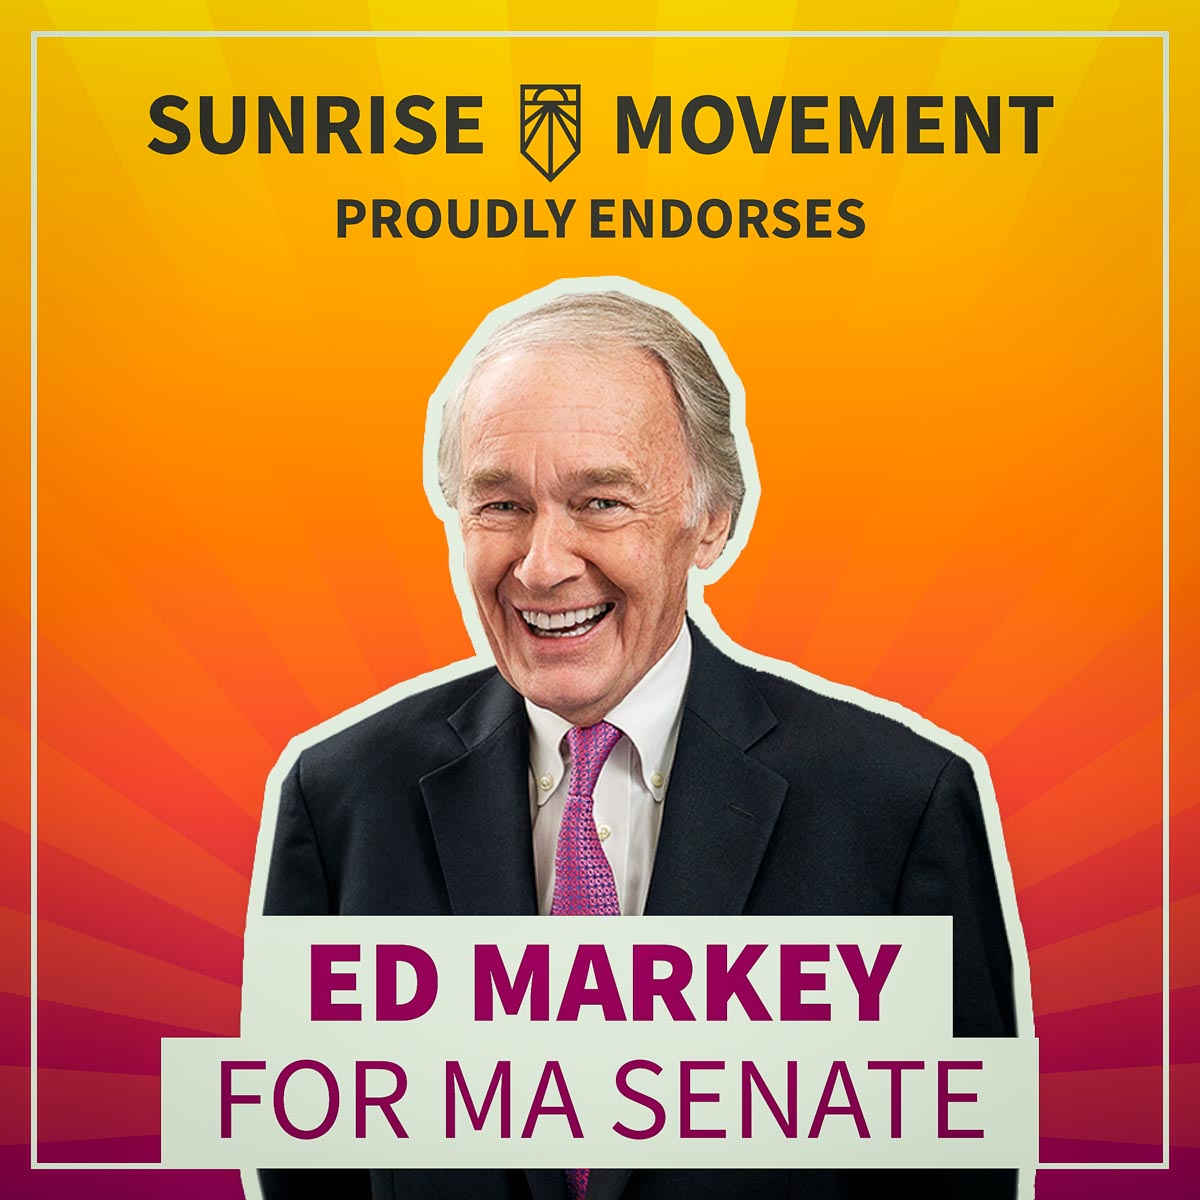 A photo of Ed Markey with text saying: Sunrise Movement proudly endorses Ed Markey for MA Senate